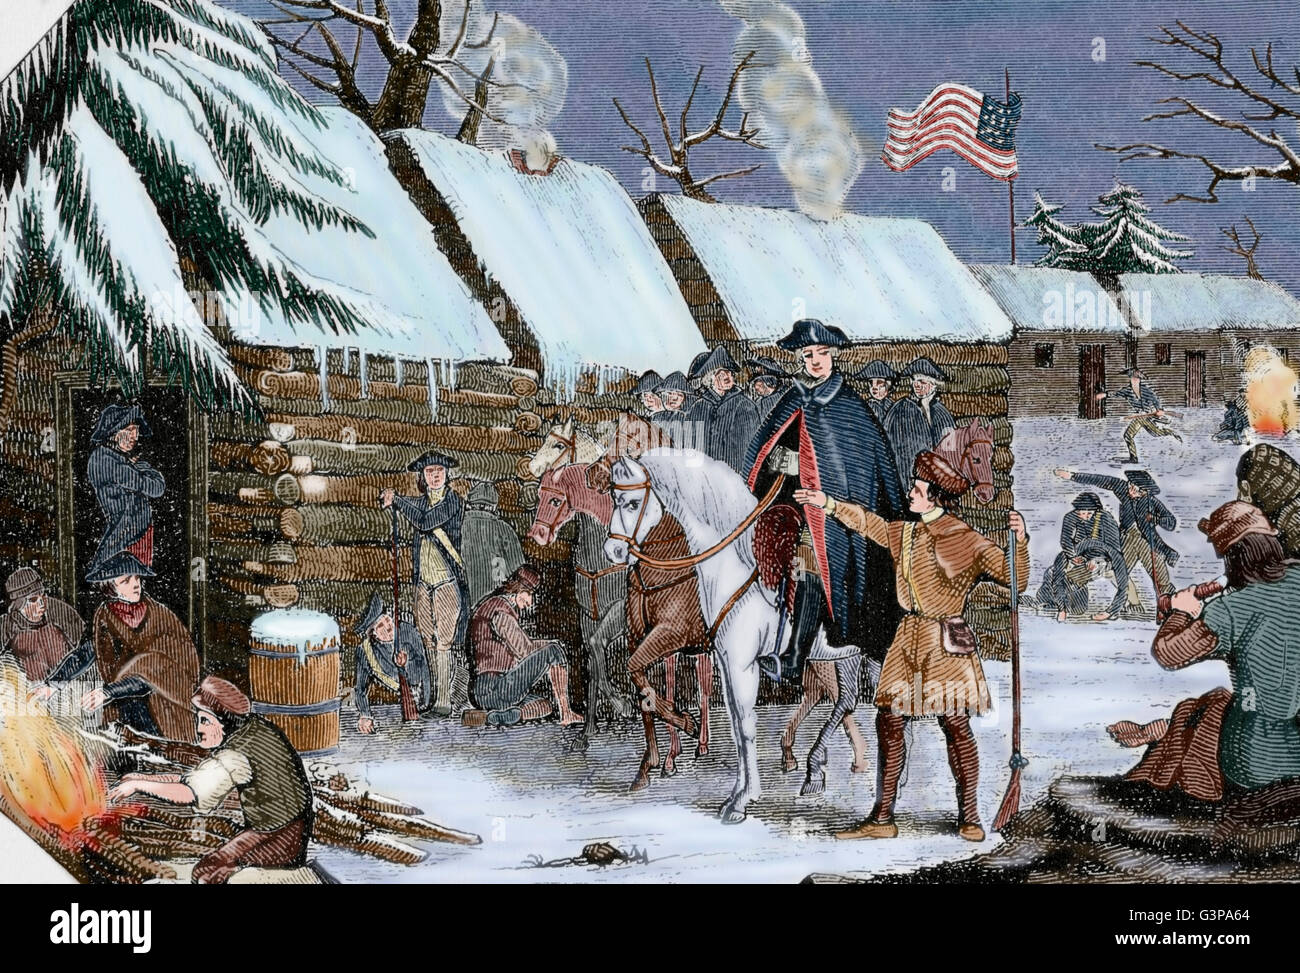 La guerra rivoluzionaria americana (1775-1783). George Washington (1732-1799) visite Valley Forge (Pennsylvania), l'esercito continentale's camp in inverno, 1777-1778. Incisione. Xix secolo. Colorati. Foto Stock